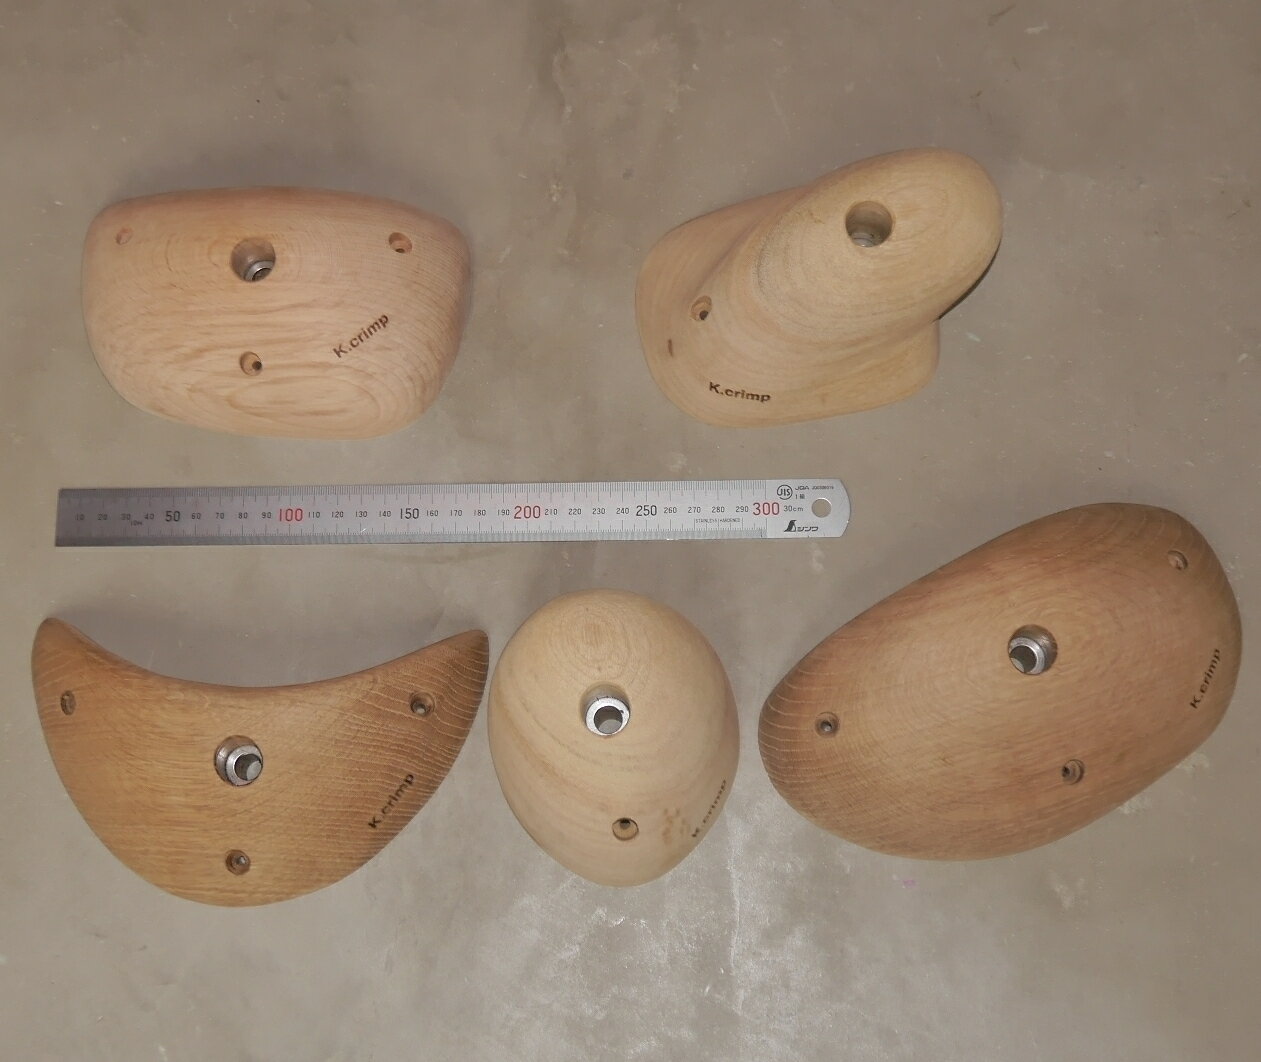 K.crimp 木製ウッドホールド 天然木材製 M10 ボルトオンホールド 新品 Lサイズ 5個セット MADE IN JAPAN 日本製 ボルダリング クライミング ウッドグリップ ガレージブランド